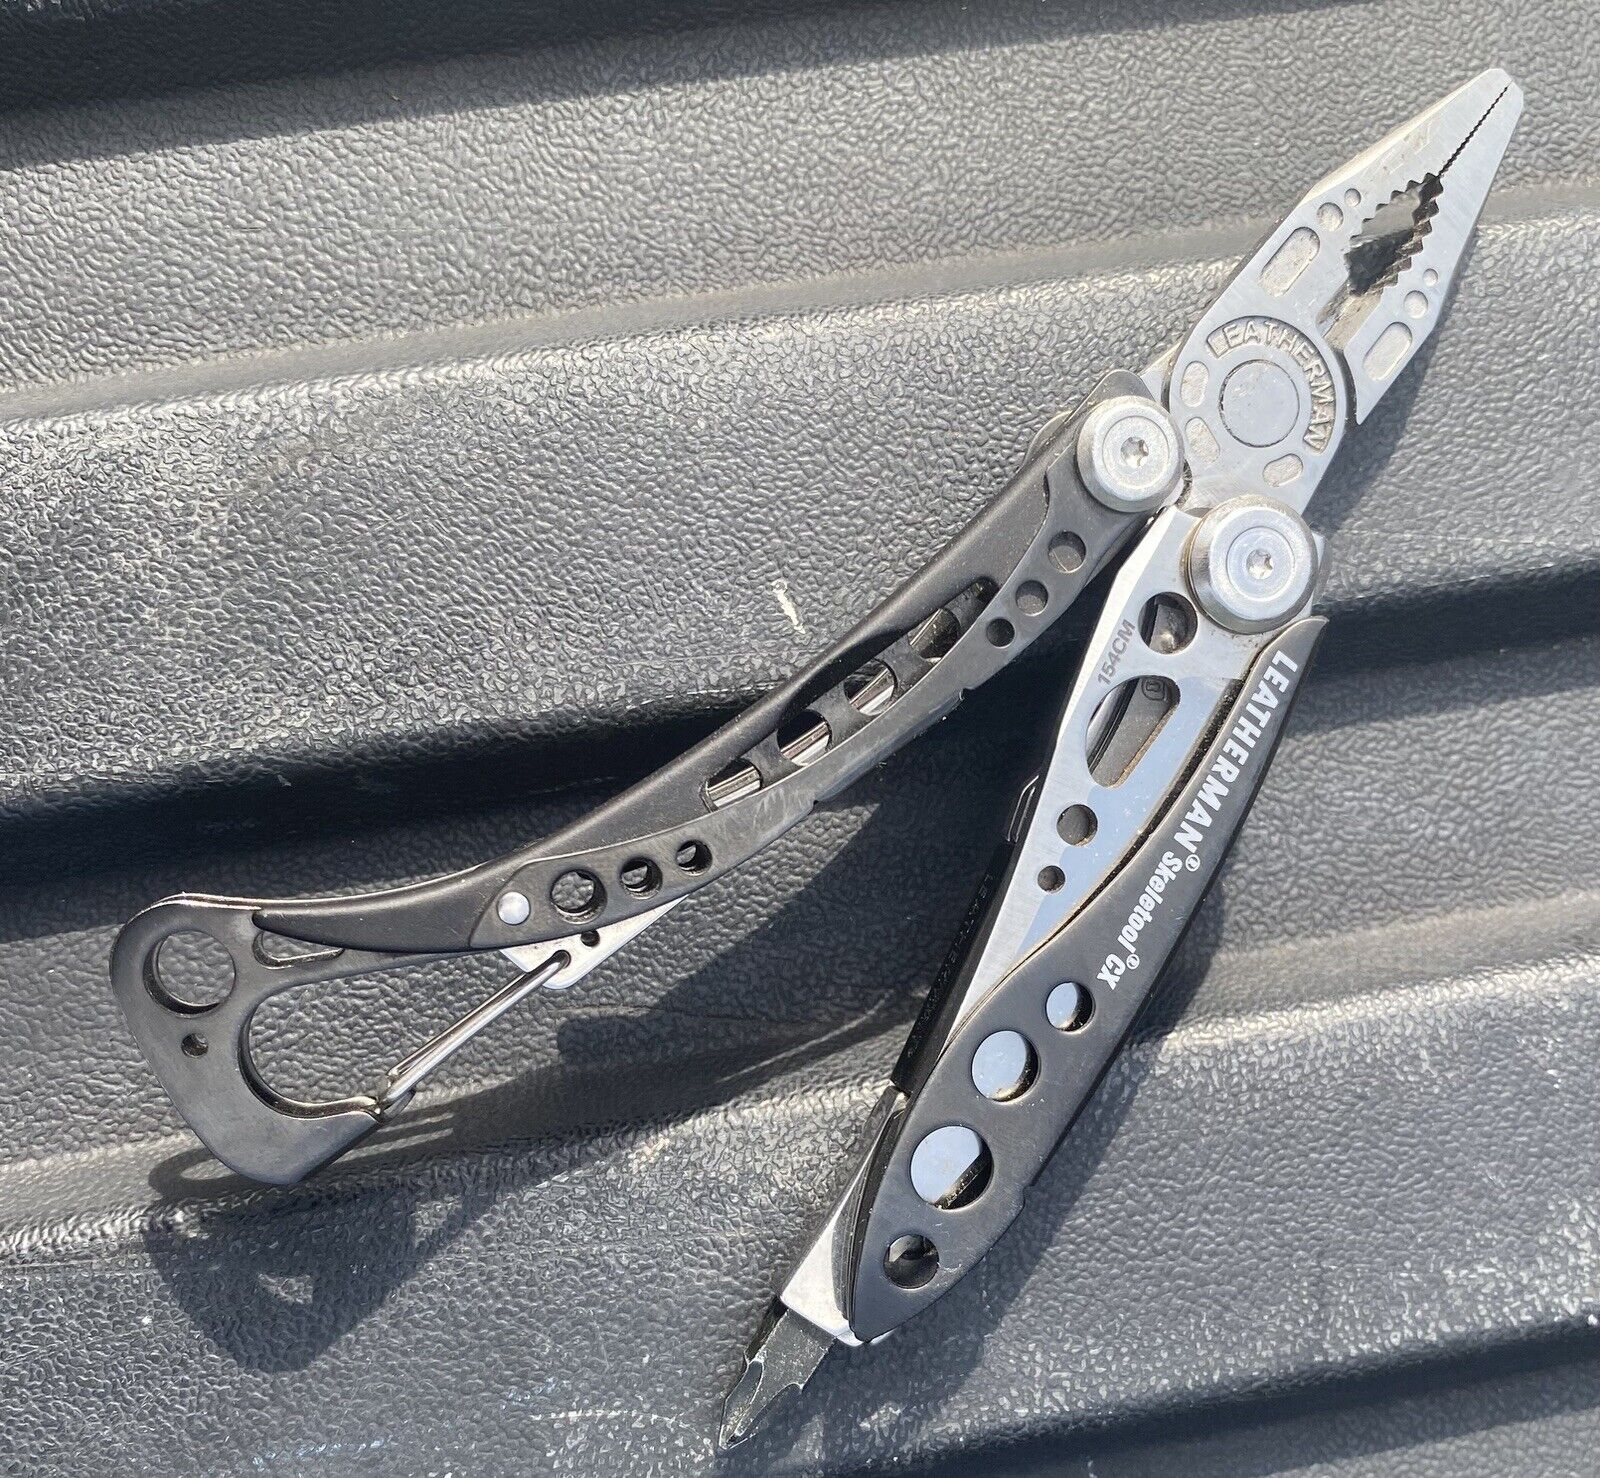 Leatherman Skeletool CX Minimalist Multi-Tool Pliers Pocket Knife Carabiner